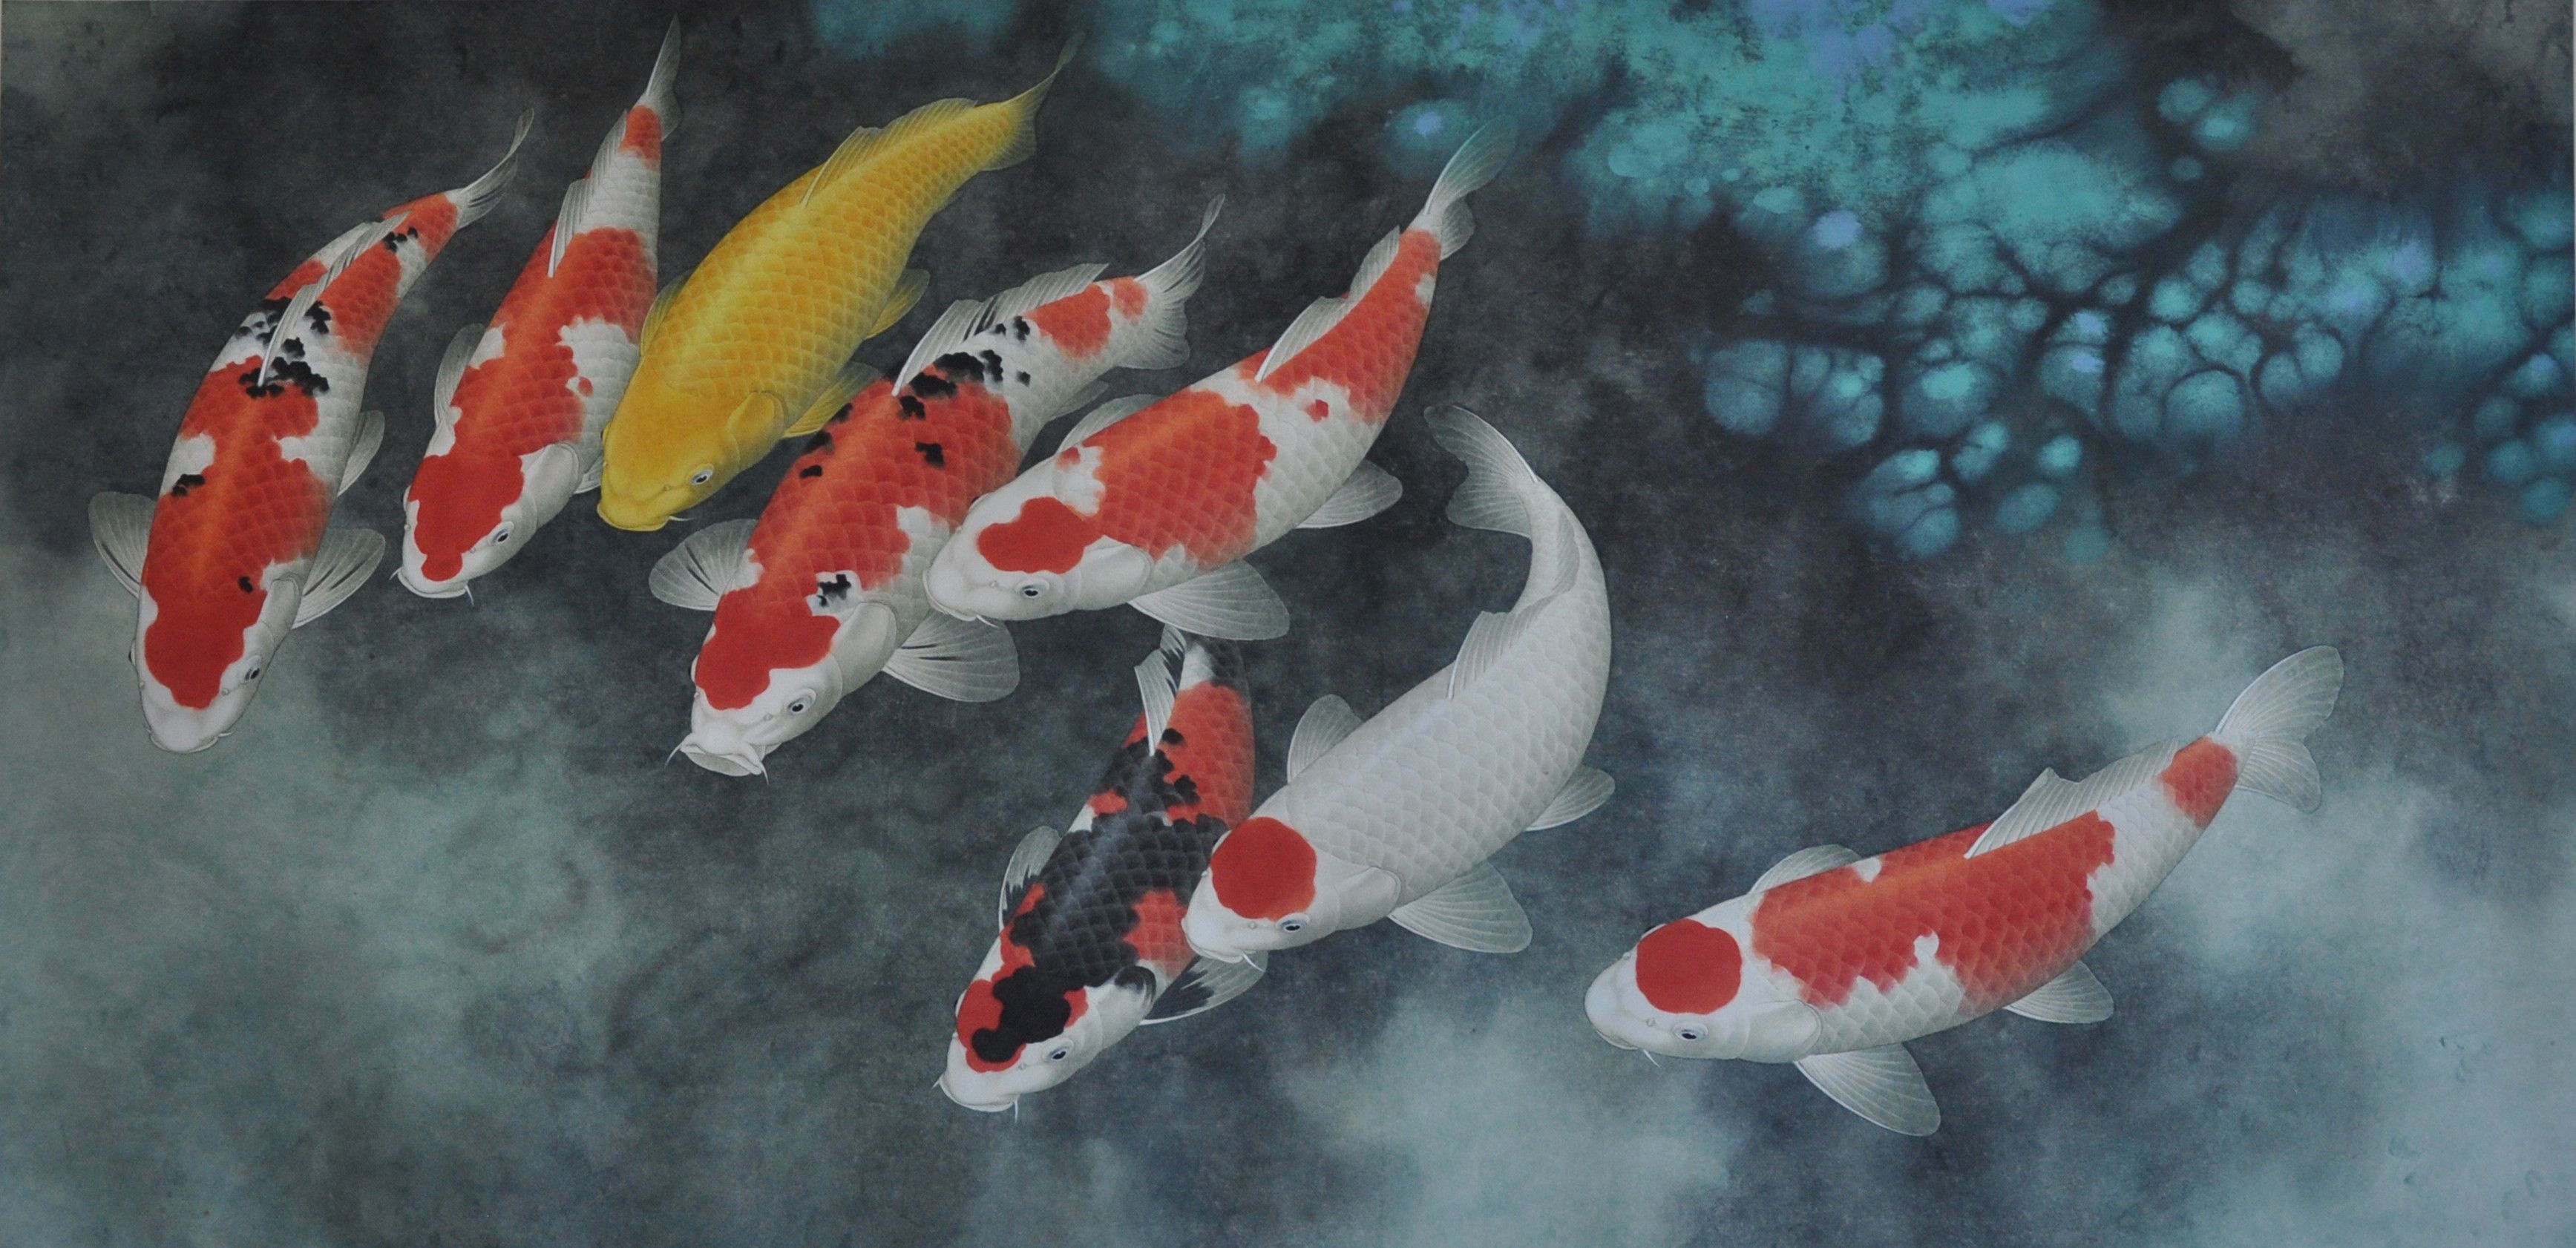 Watercolor fish wallpaper, Artistic masterpiece, Fish painting, Colorful, 3480x1690 Dual Screen Desktop